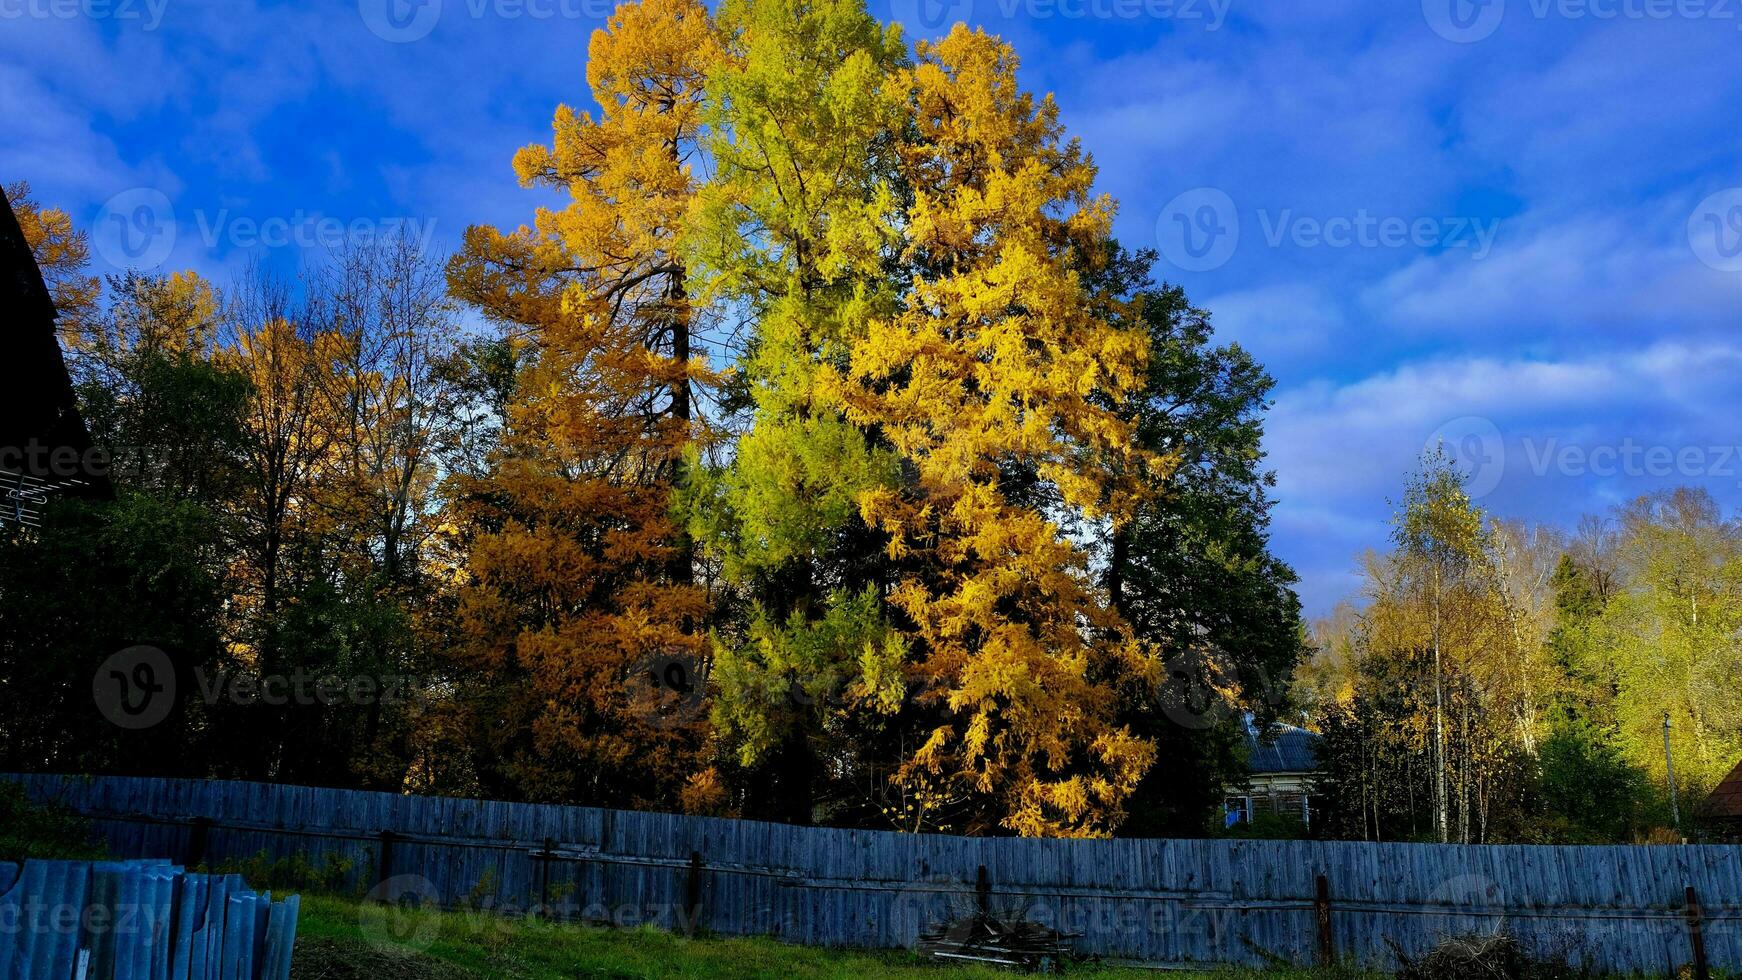 vicino il vecchio di legno recinto cresce un' enorme larice, suo aghi siamo giallo nel autunno foto